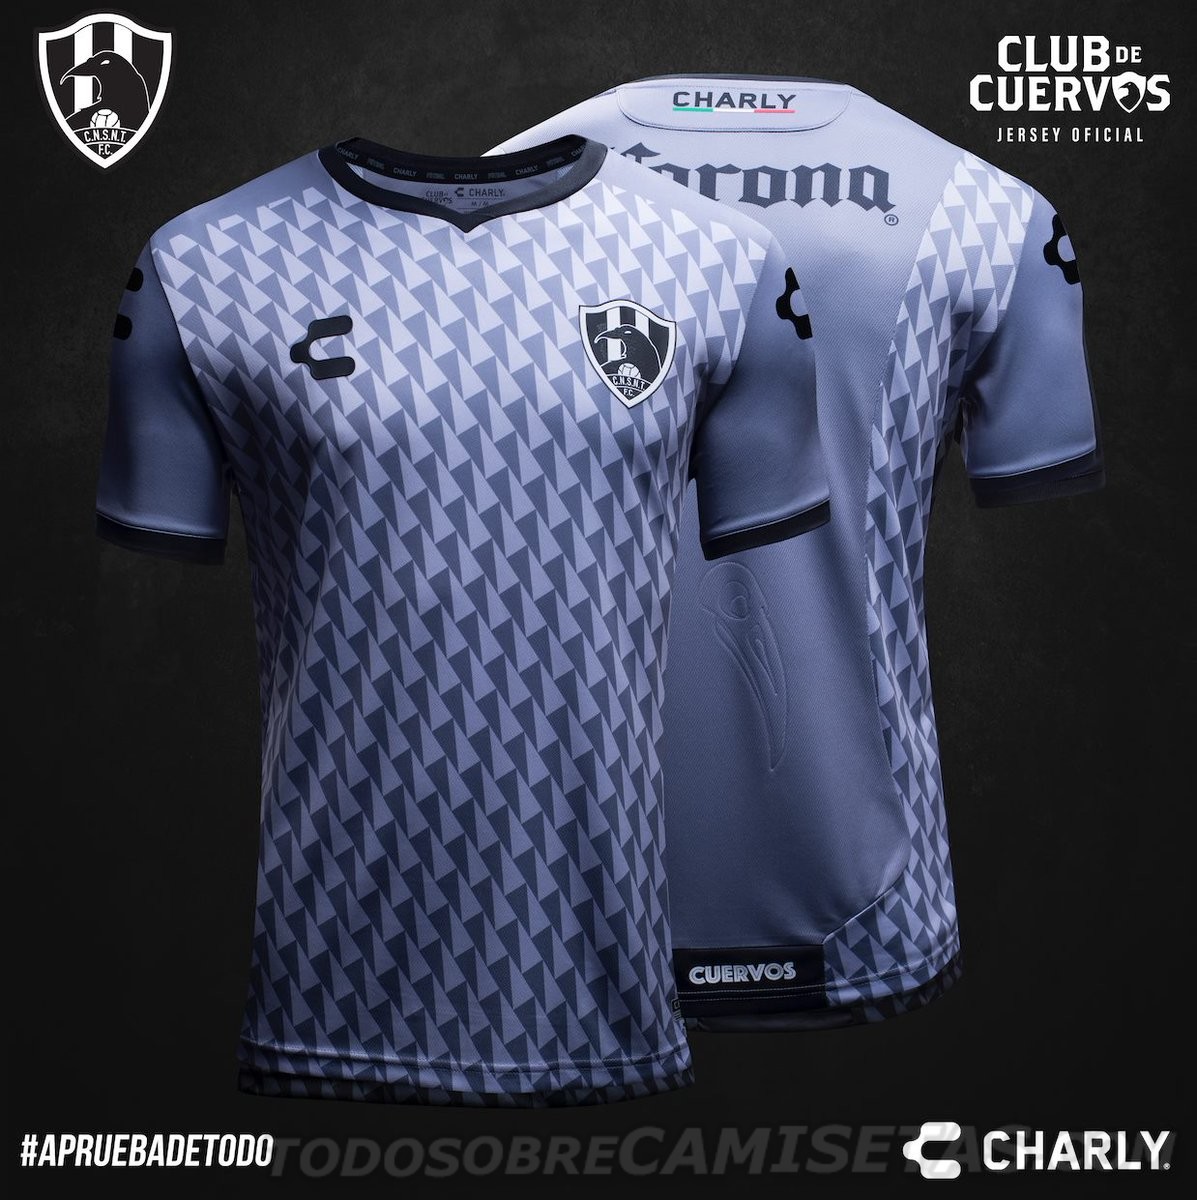 jerseys-club-de-cuervos-temporada-4-charly-futbol-2 - Todo Sobre Camisetas